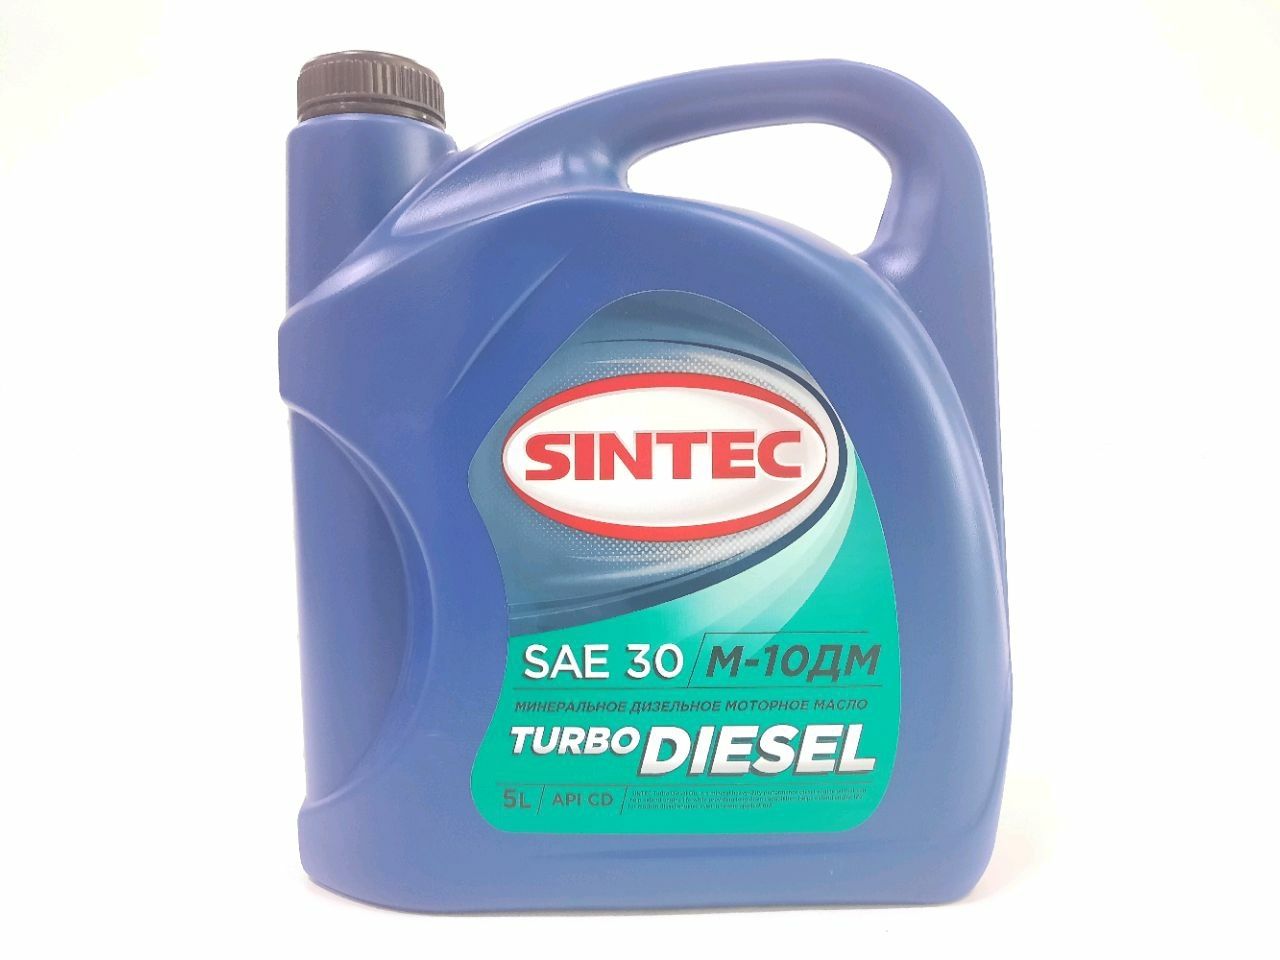 SINTEC Diesel M-10G2k 5L